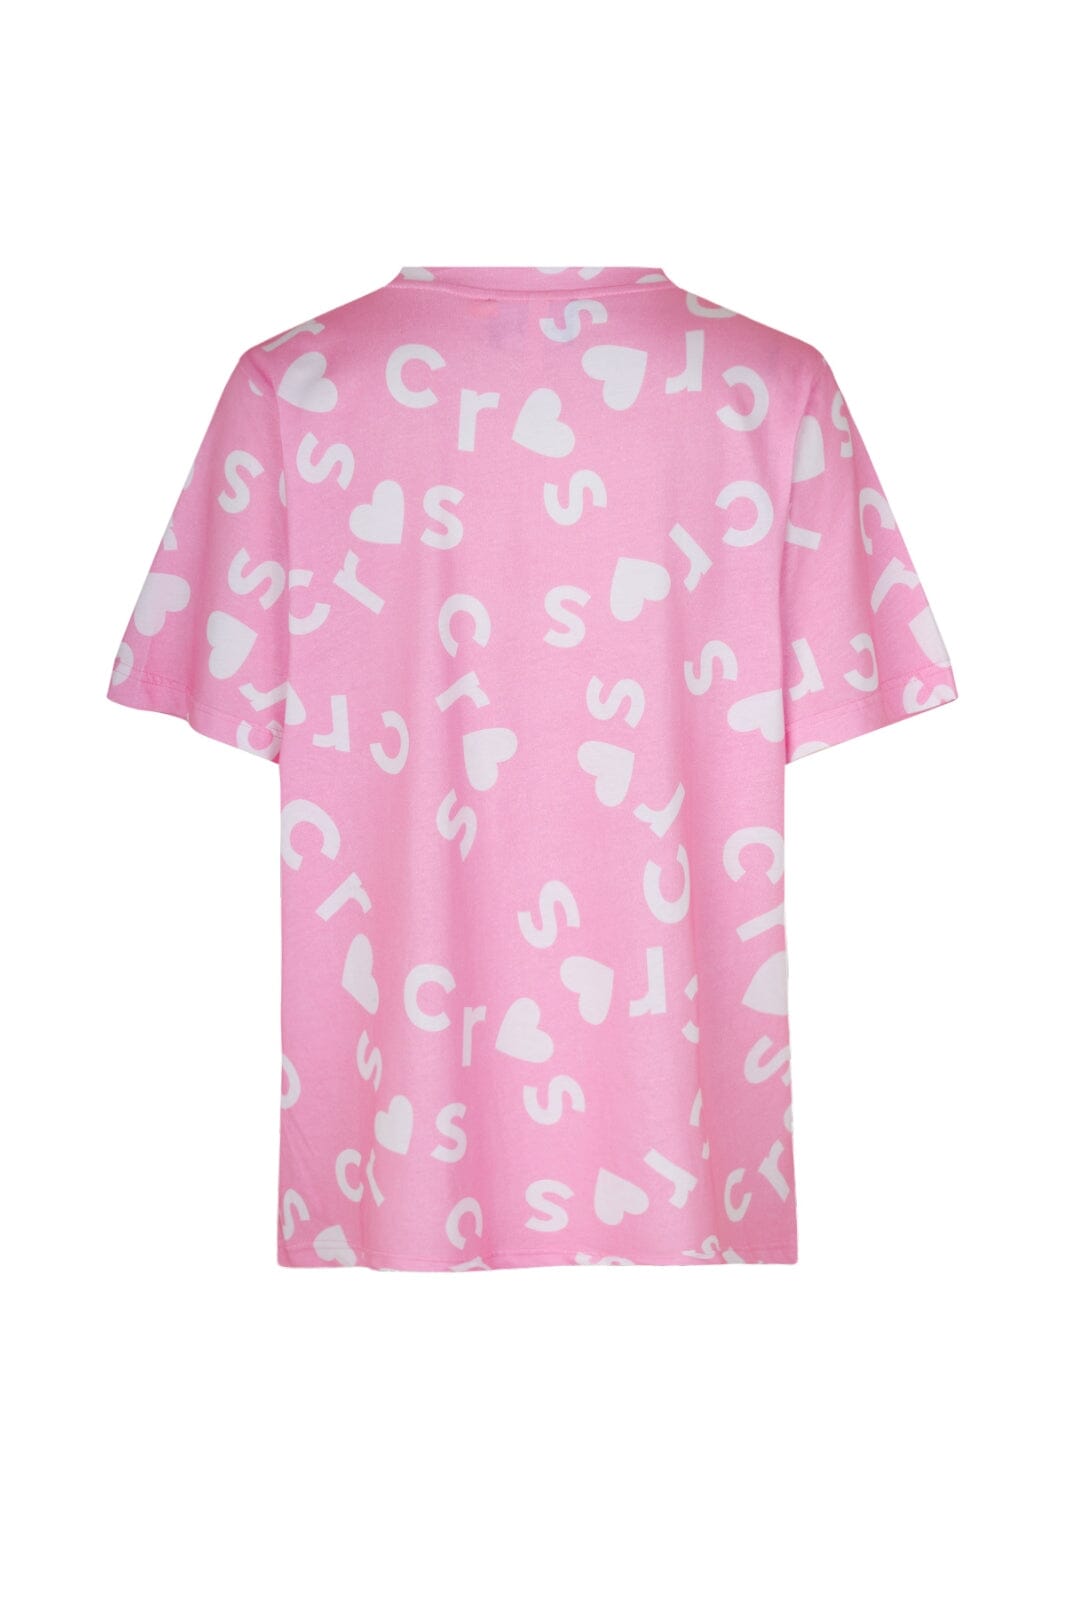 Cras - Anitacras T-Shirt - Pink Moon T-shirts 